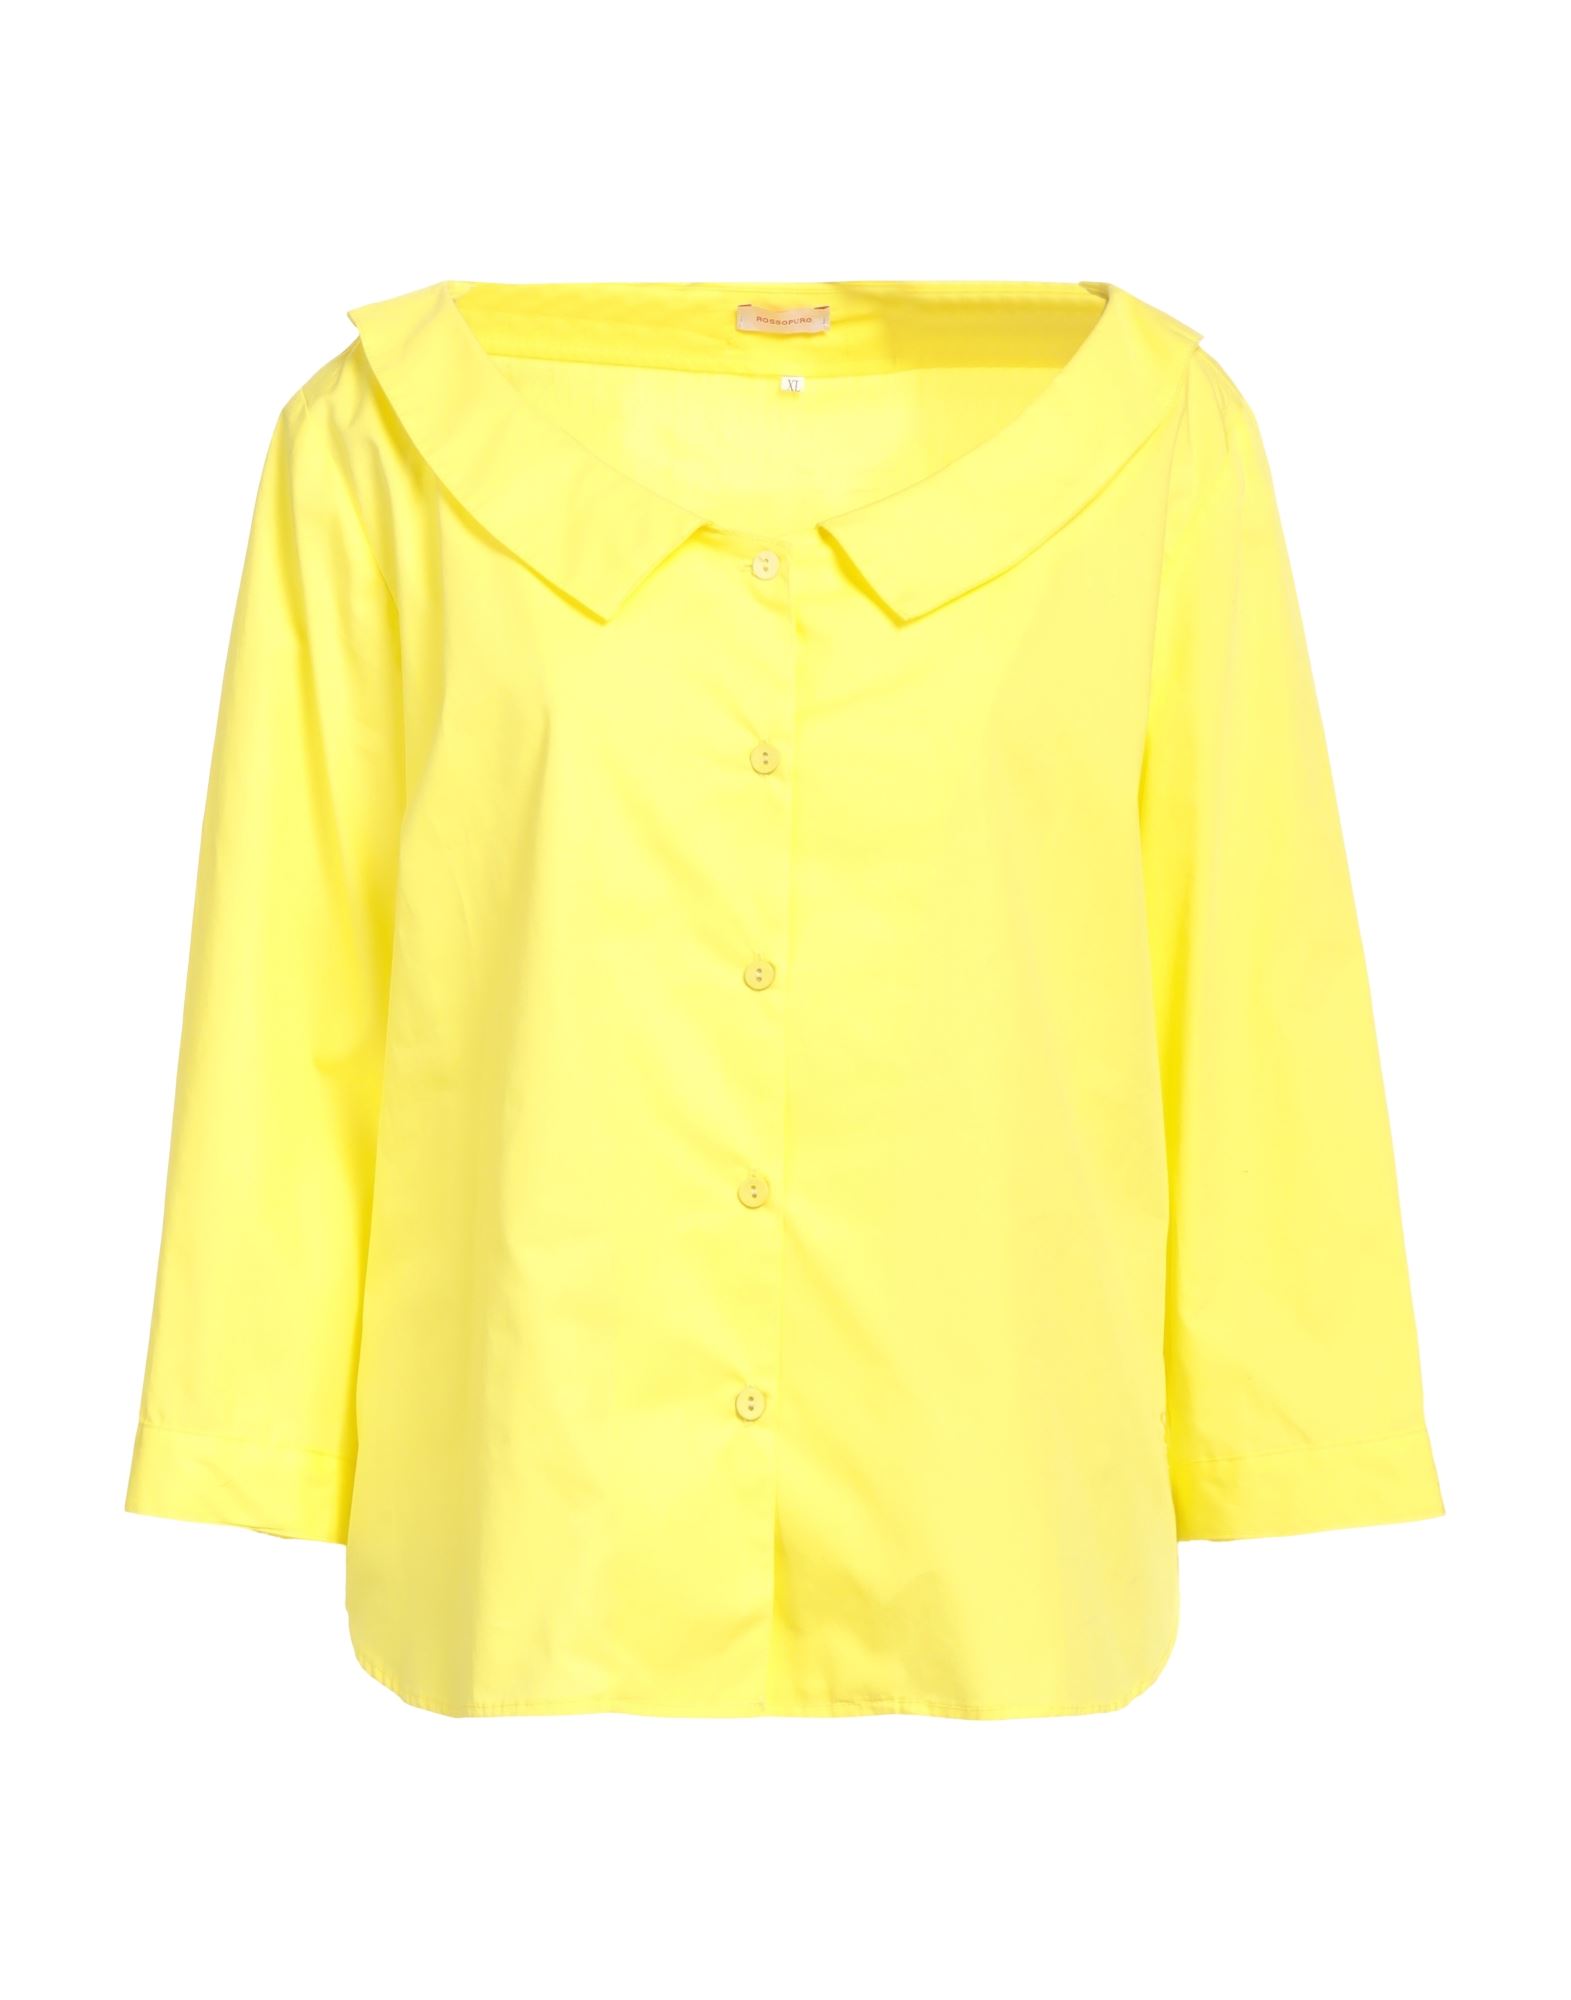 Rossopuro Shirts In Yellow